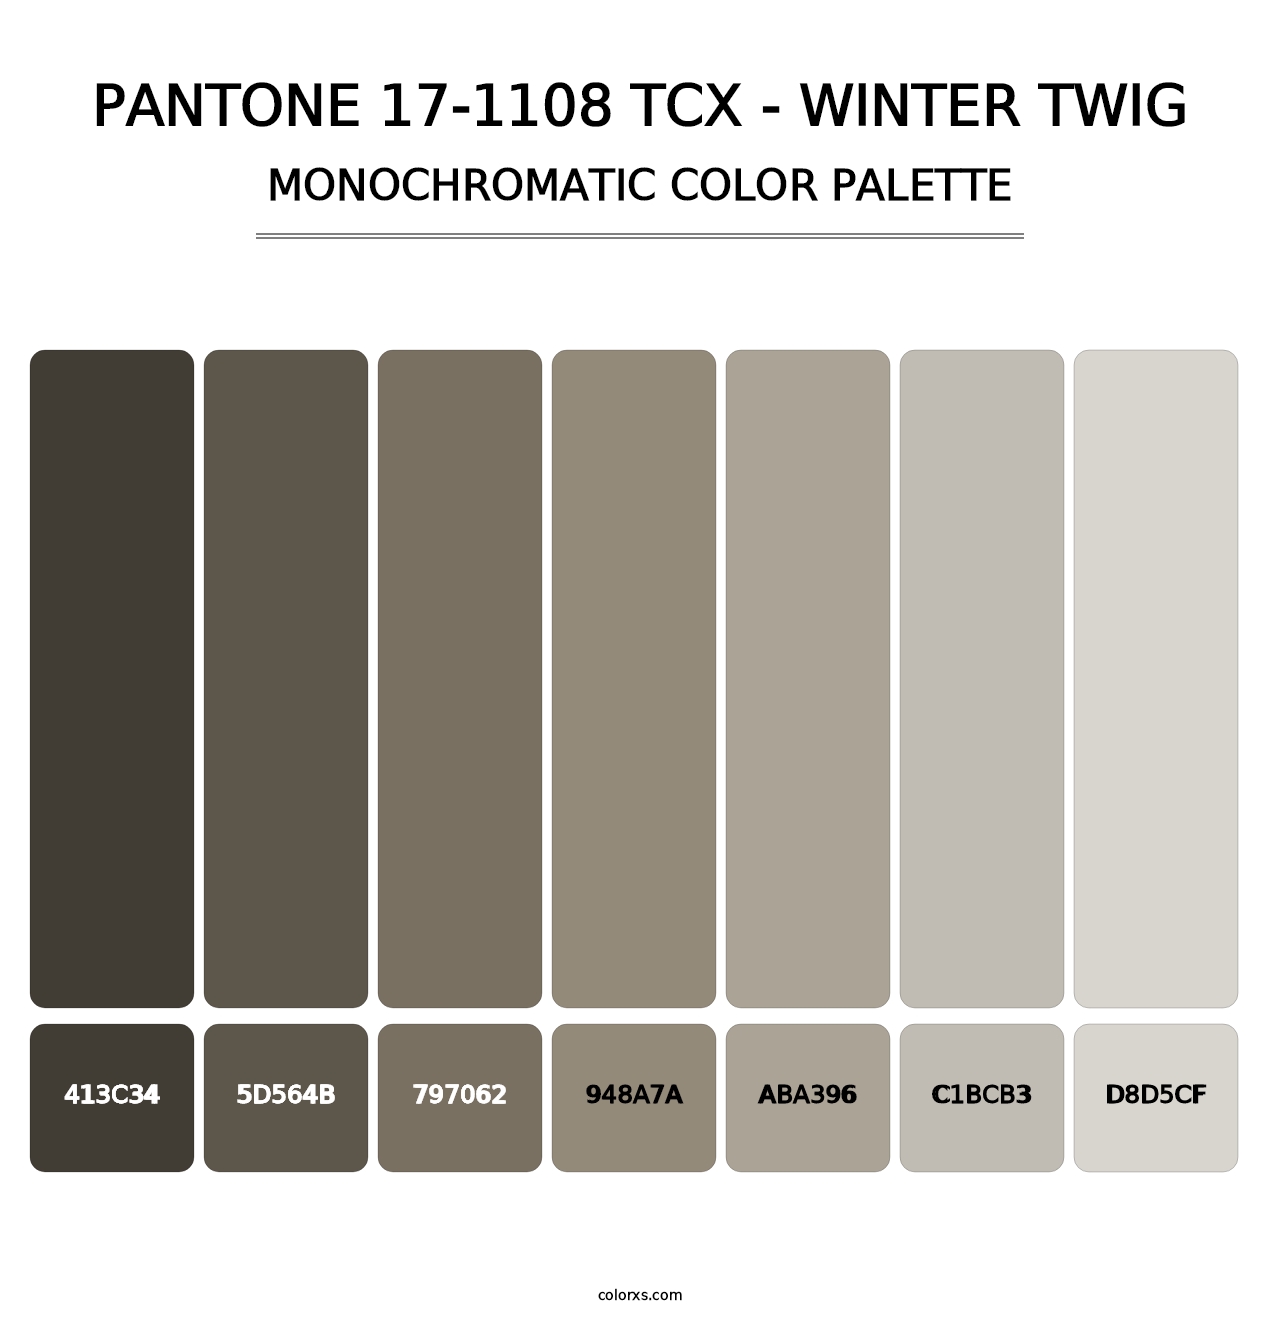 PANTONE 17-1108 TCX - Winter Twig - Monochromatic Color Palette